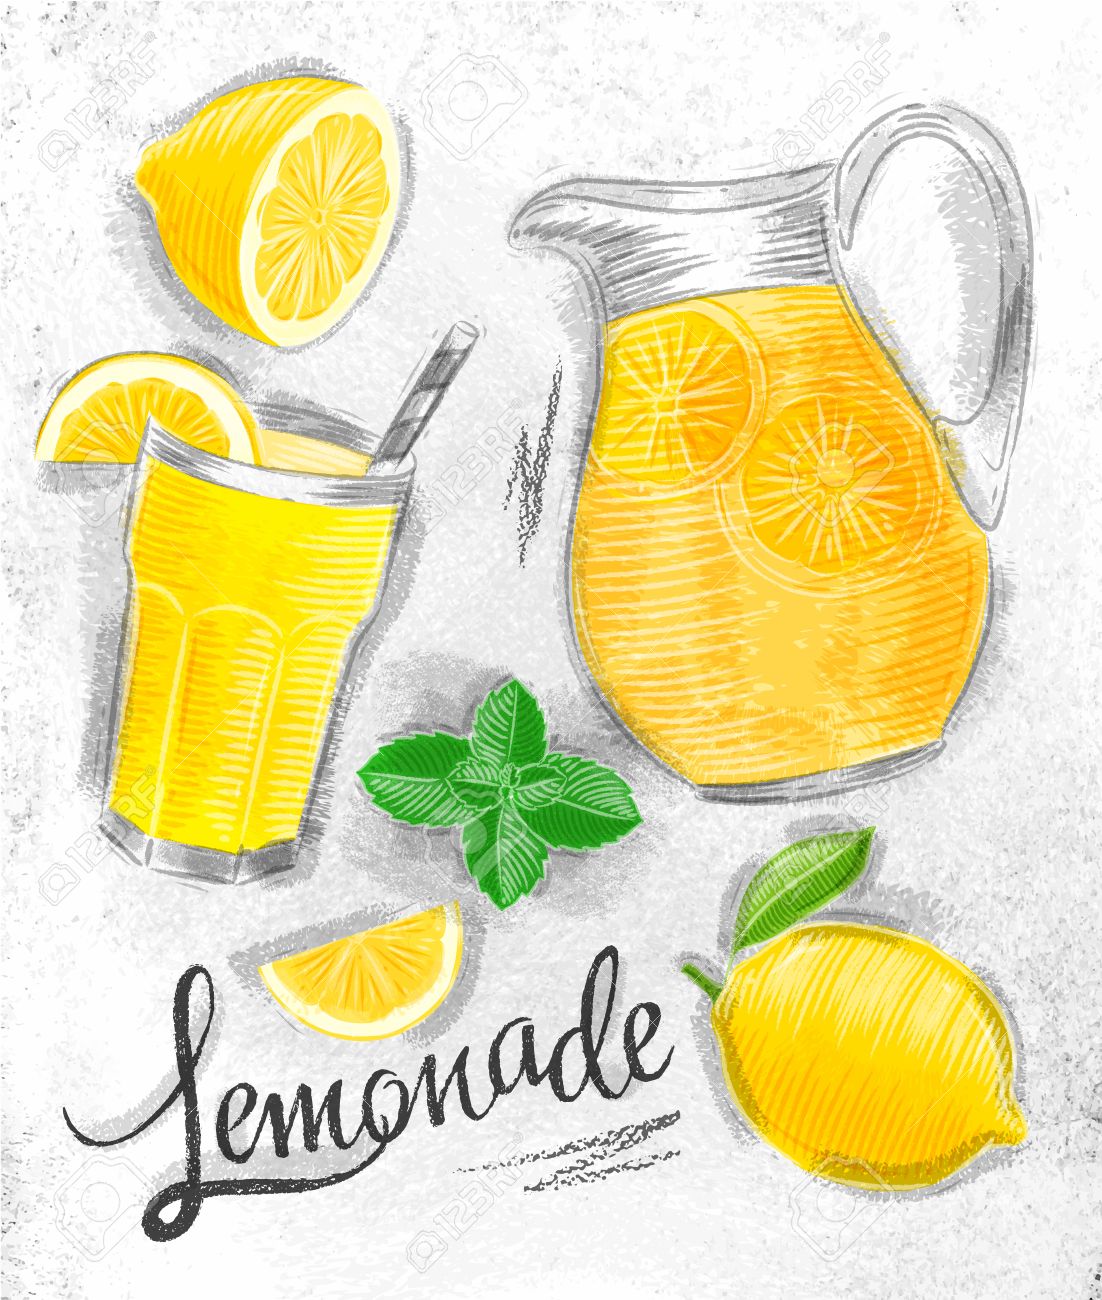 Lemonade Drawing at GetDrawings Free download